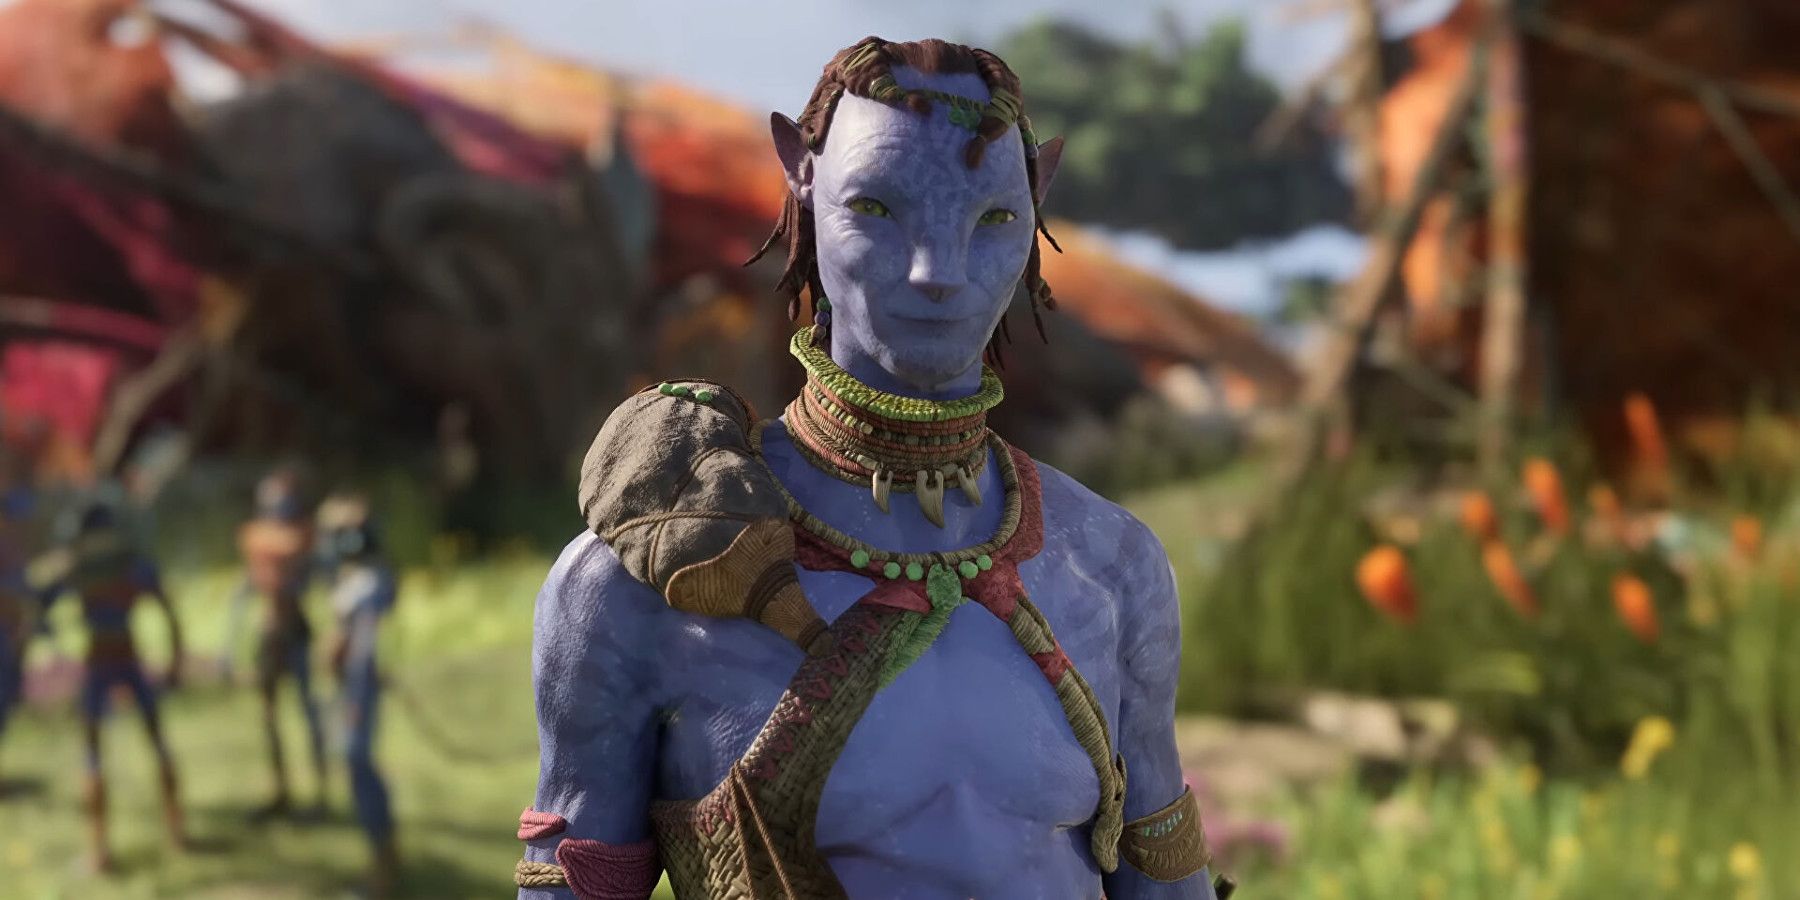 Avatar-Frontiers-of-Pandora-Pre-Orders-Live-Soon-Ubisoft-Massive-Disney